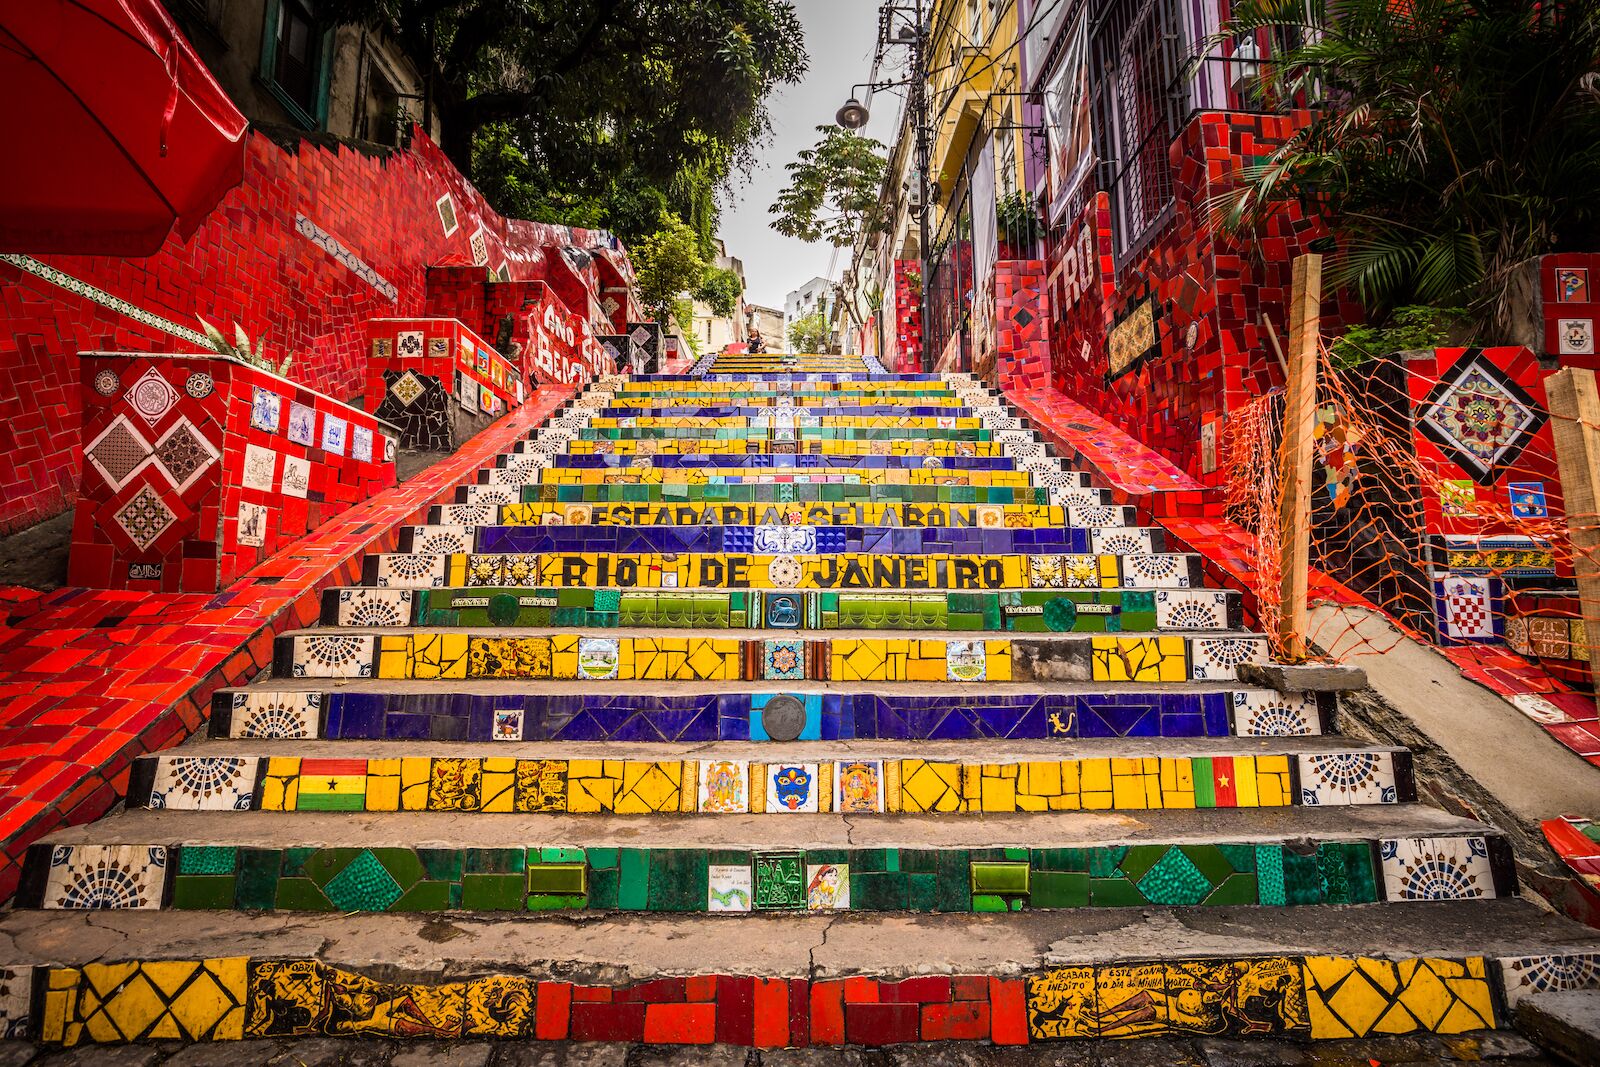 Escadaria Selaron is an example of street art in Rio, Brazil